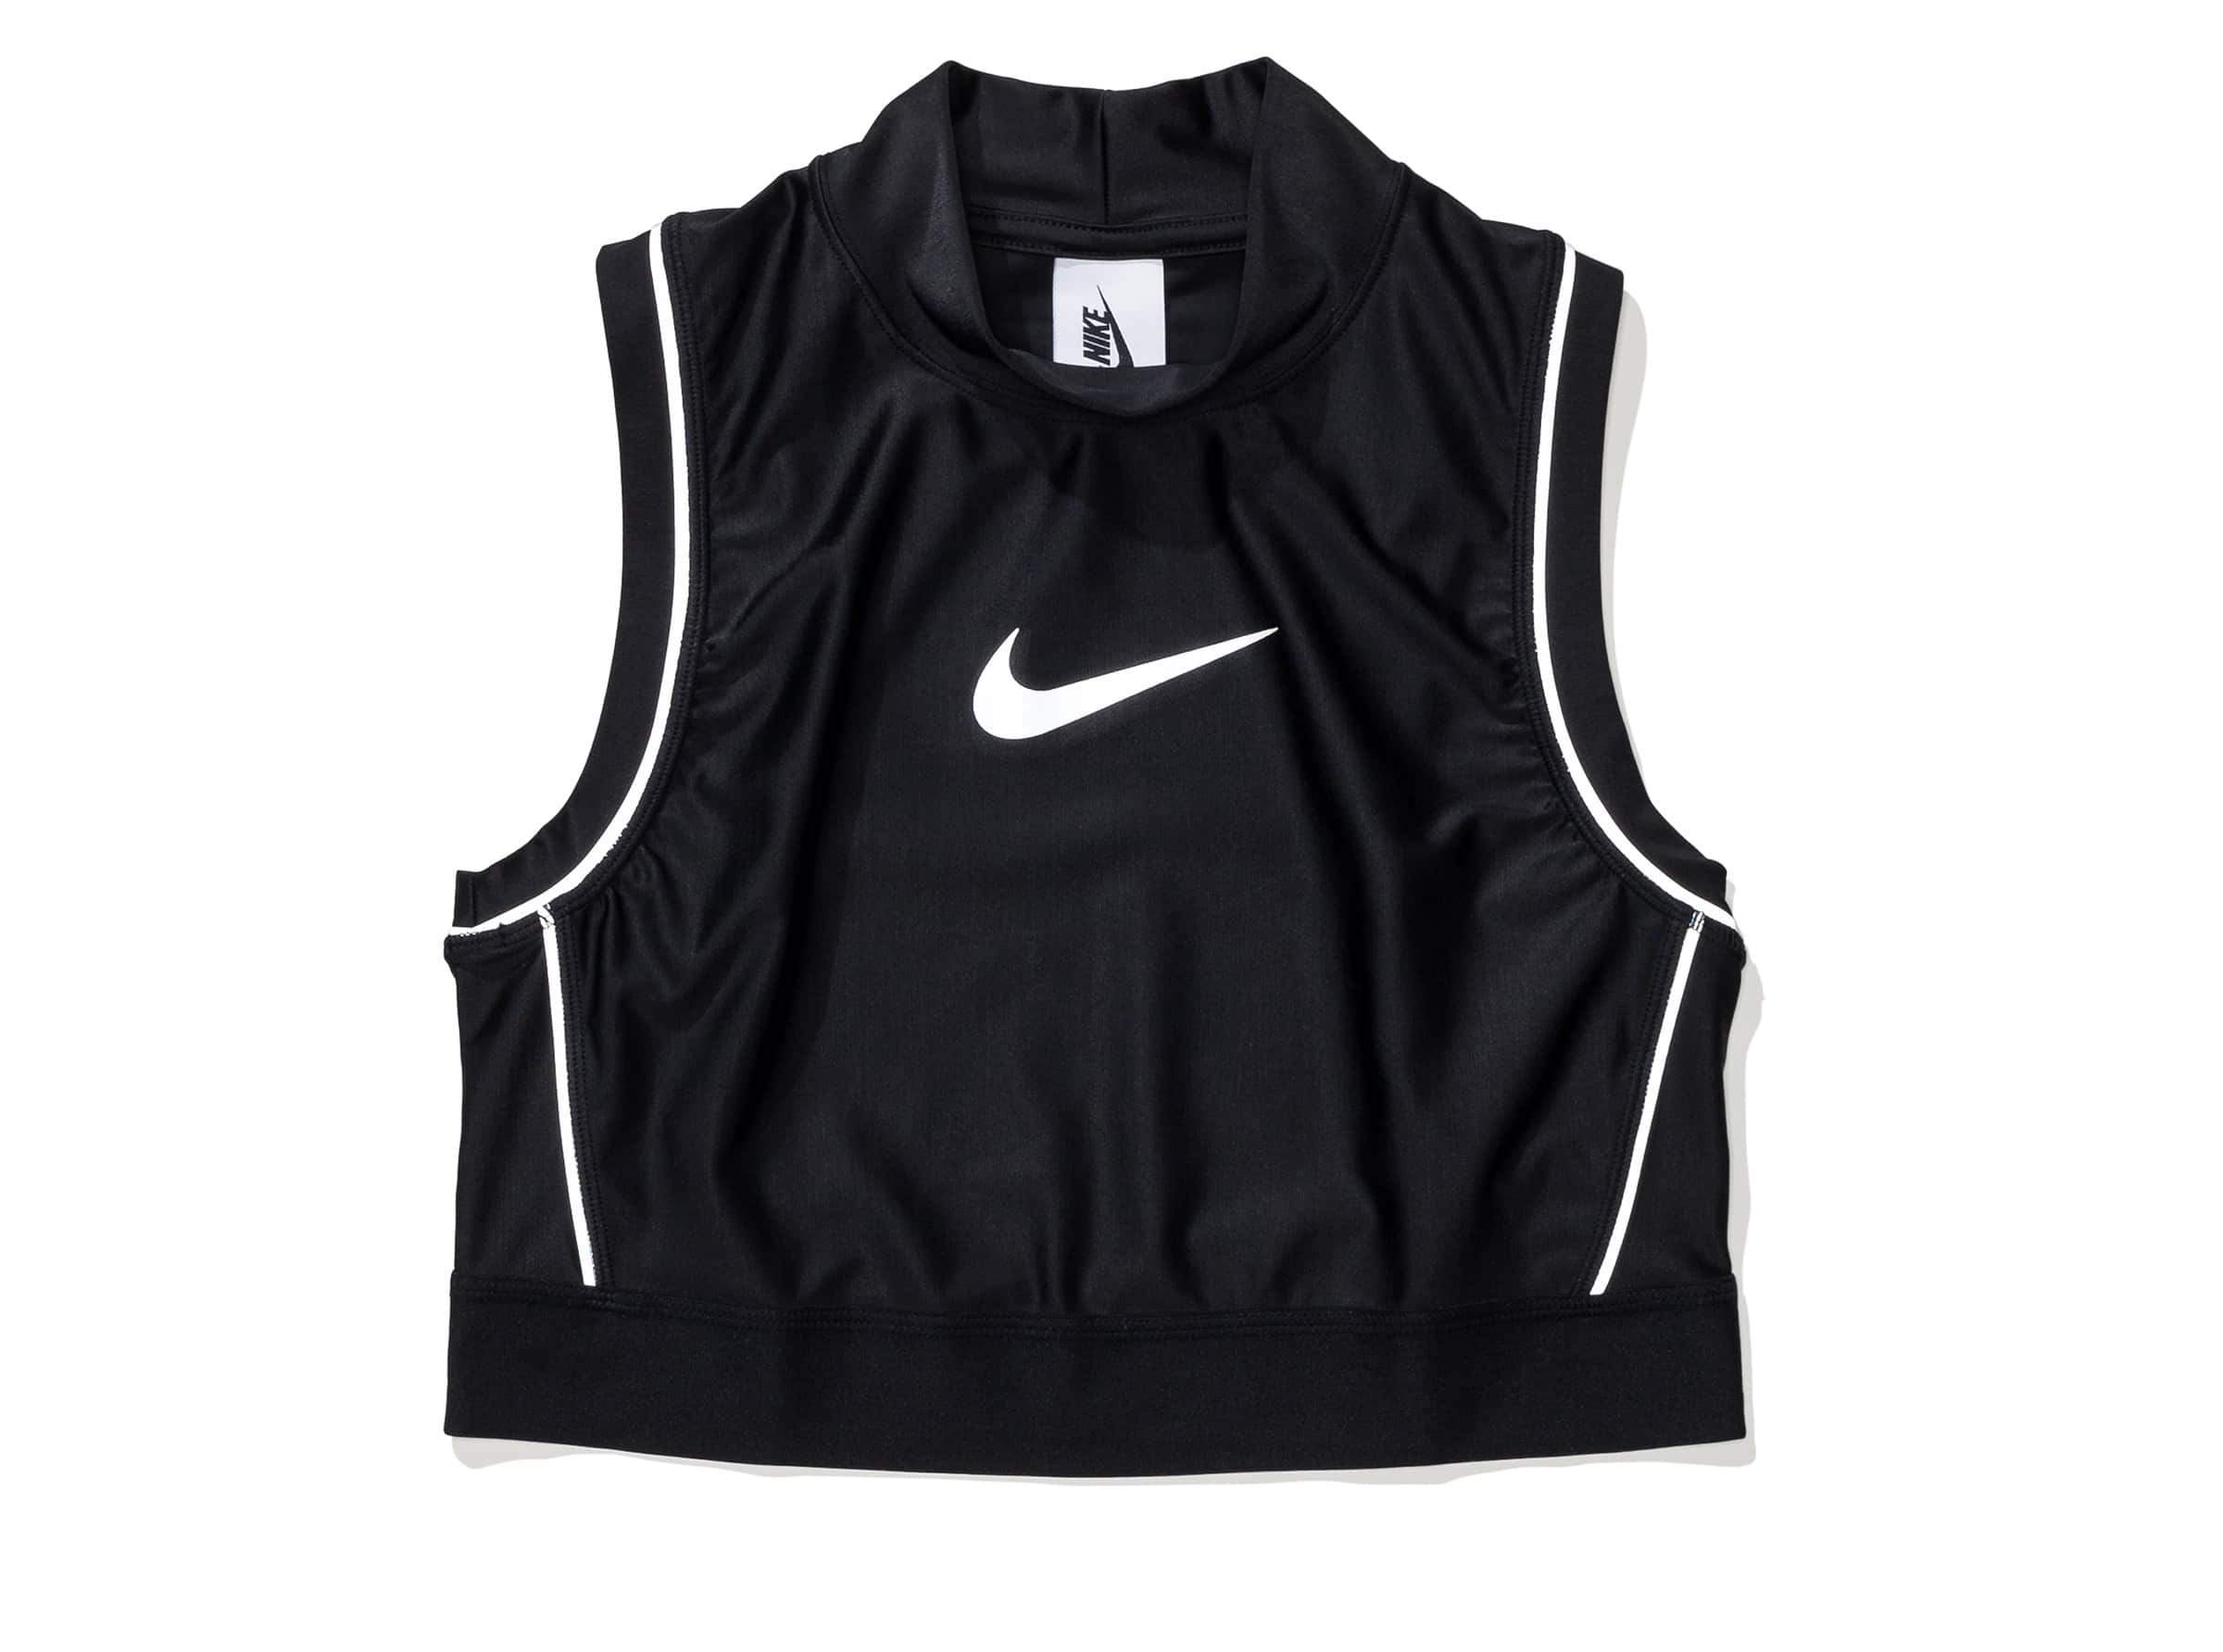 Nike Undefeated Logo - NIKE X AMBUSH WOMEN'S NRG CA CROP TOP - BLACK | Undefeated